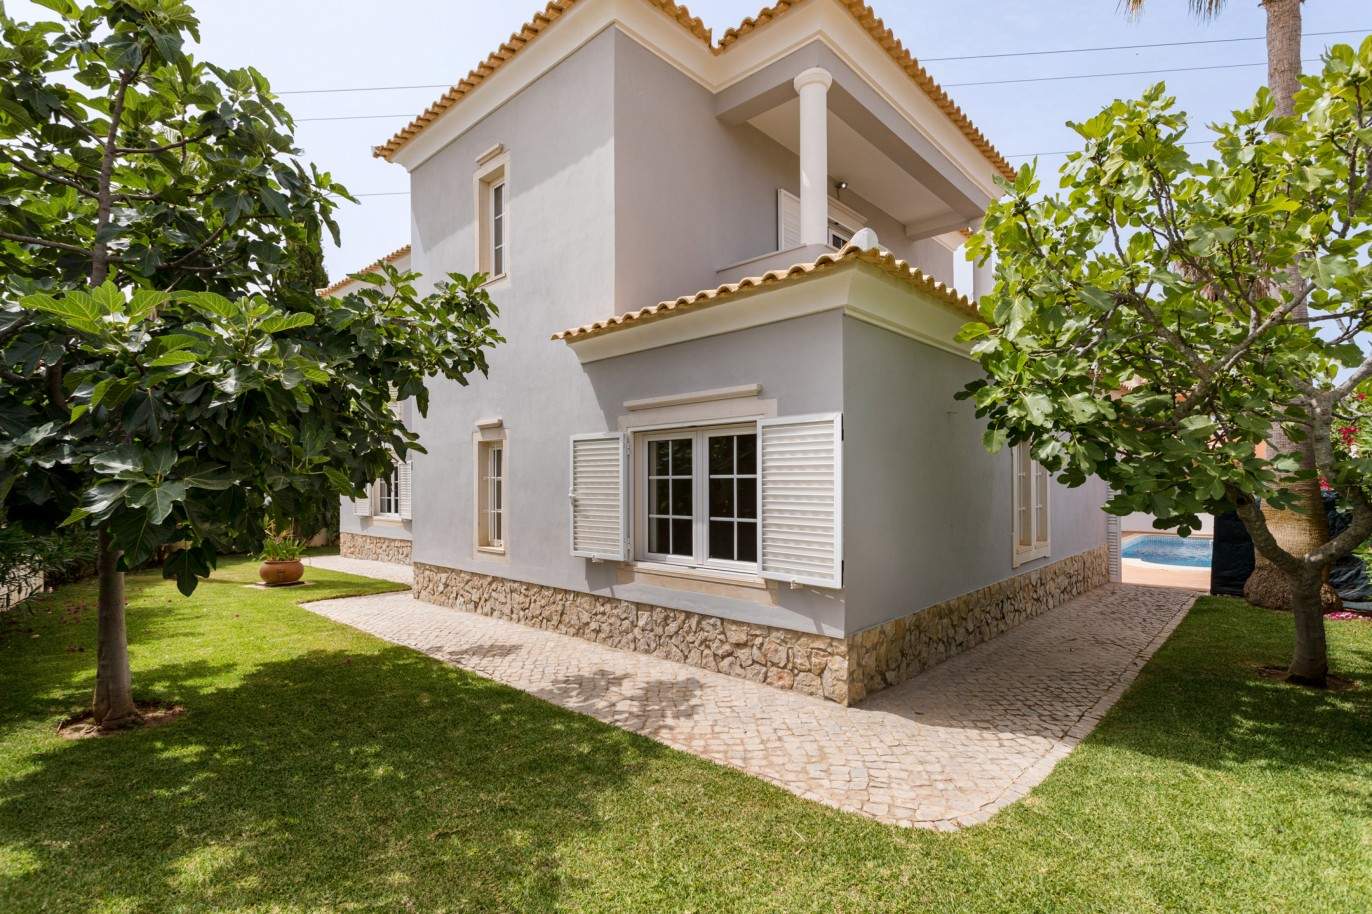 4 Bedroom Villa with pool à vendre à Quarteira, Algarve_201733